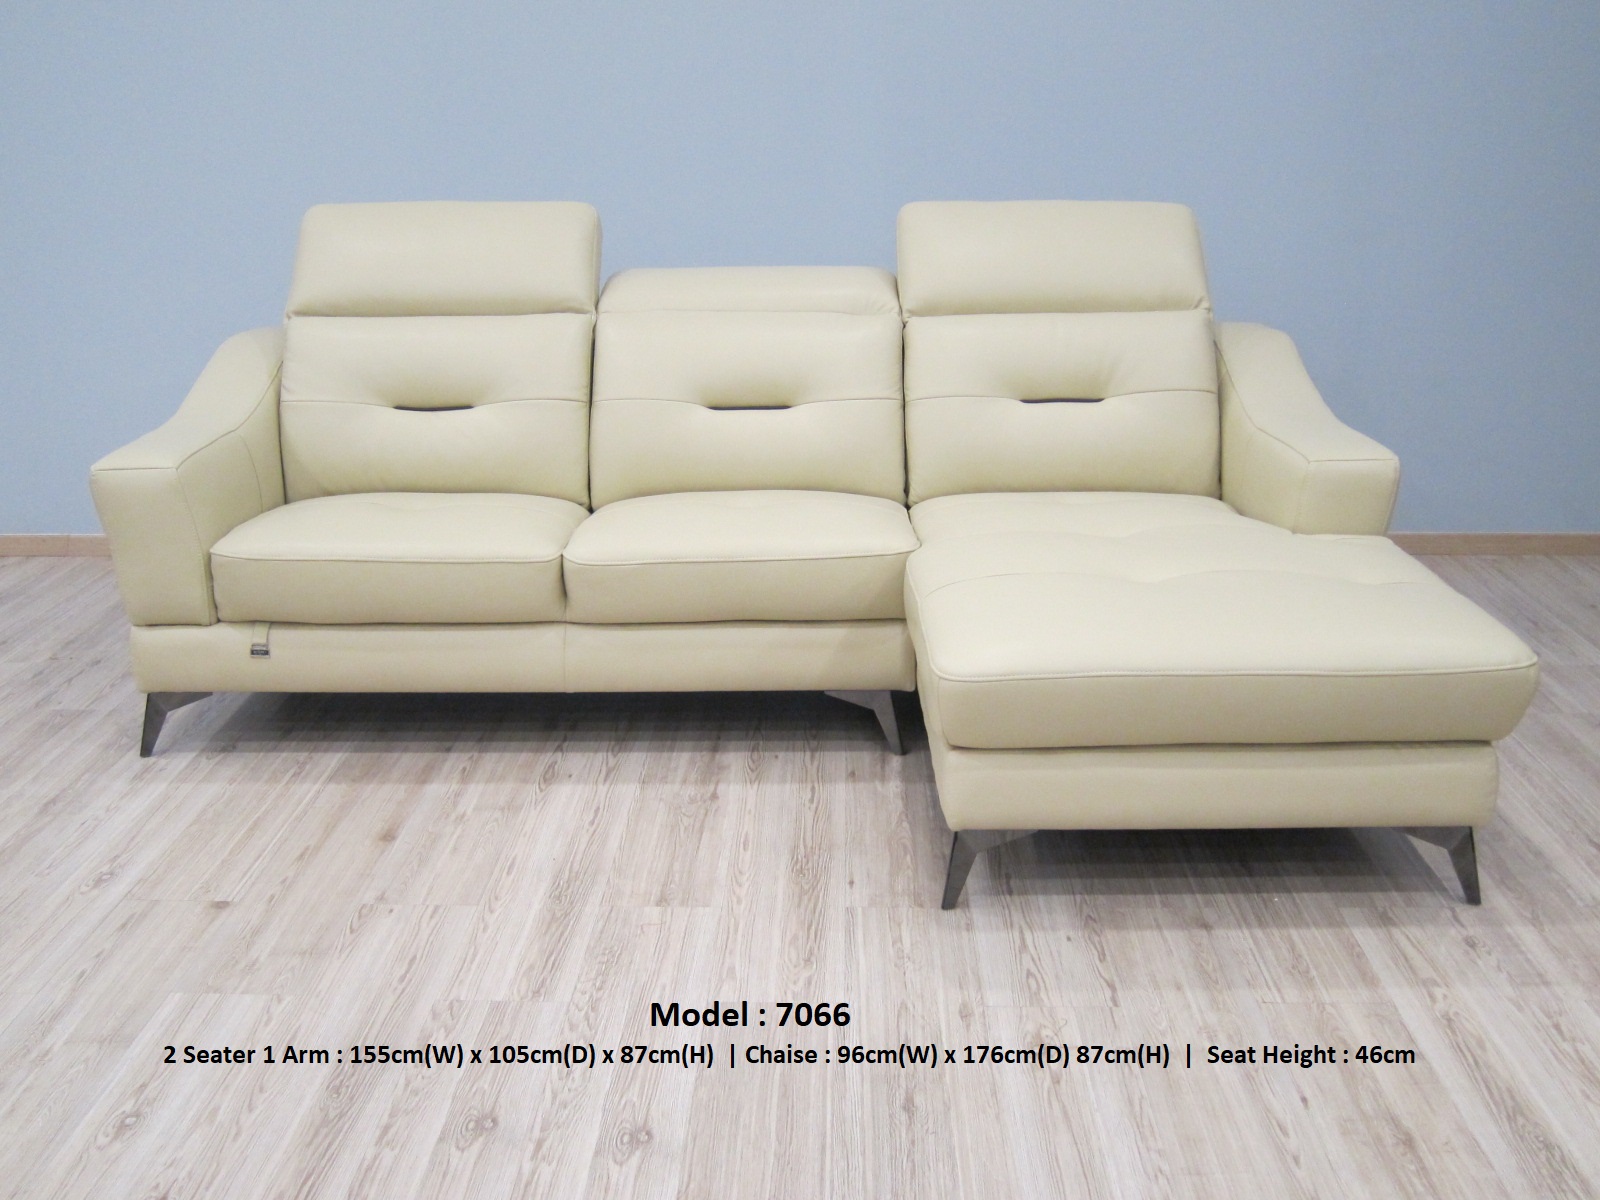 Top ghế sofa màu sáng nhẹ thiết kế hiện đại trẻ trung - Ảnh 11